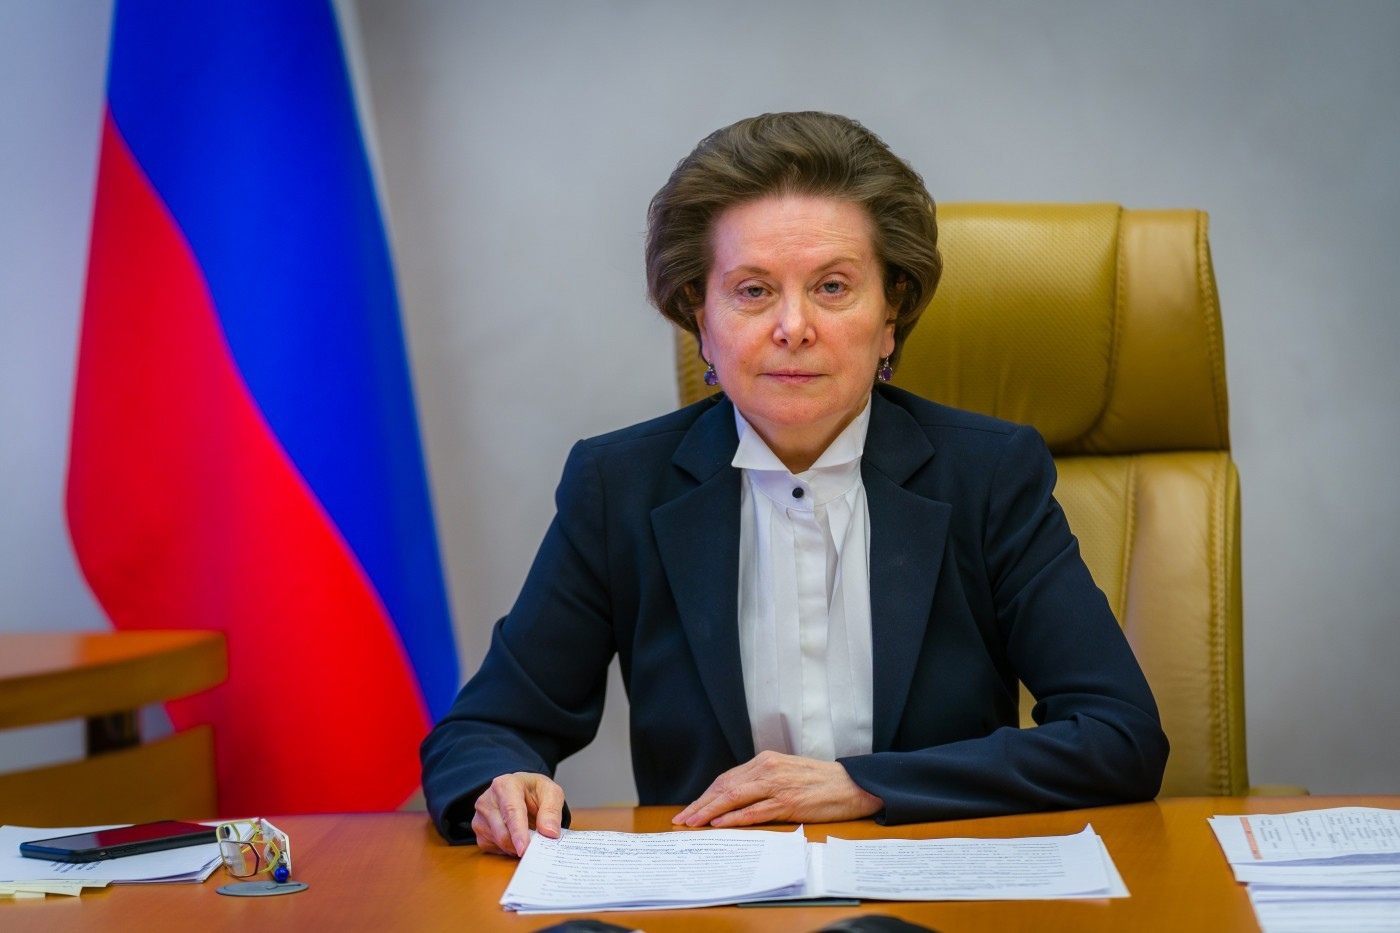 21 октября 2022 года губернатор ХМАО-Югры Наталья Владимировна Комарова отмечает День рождения!.